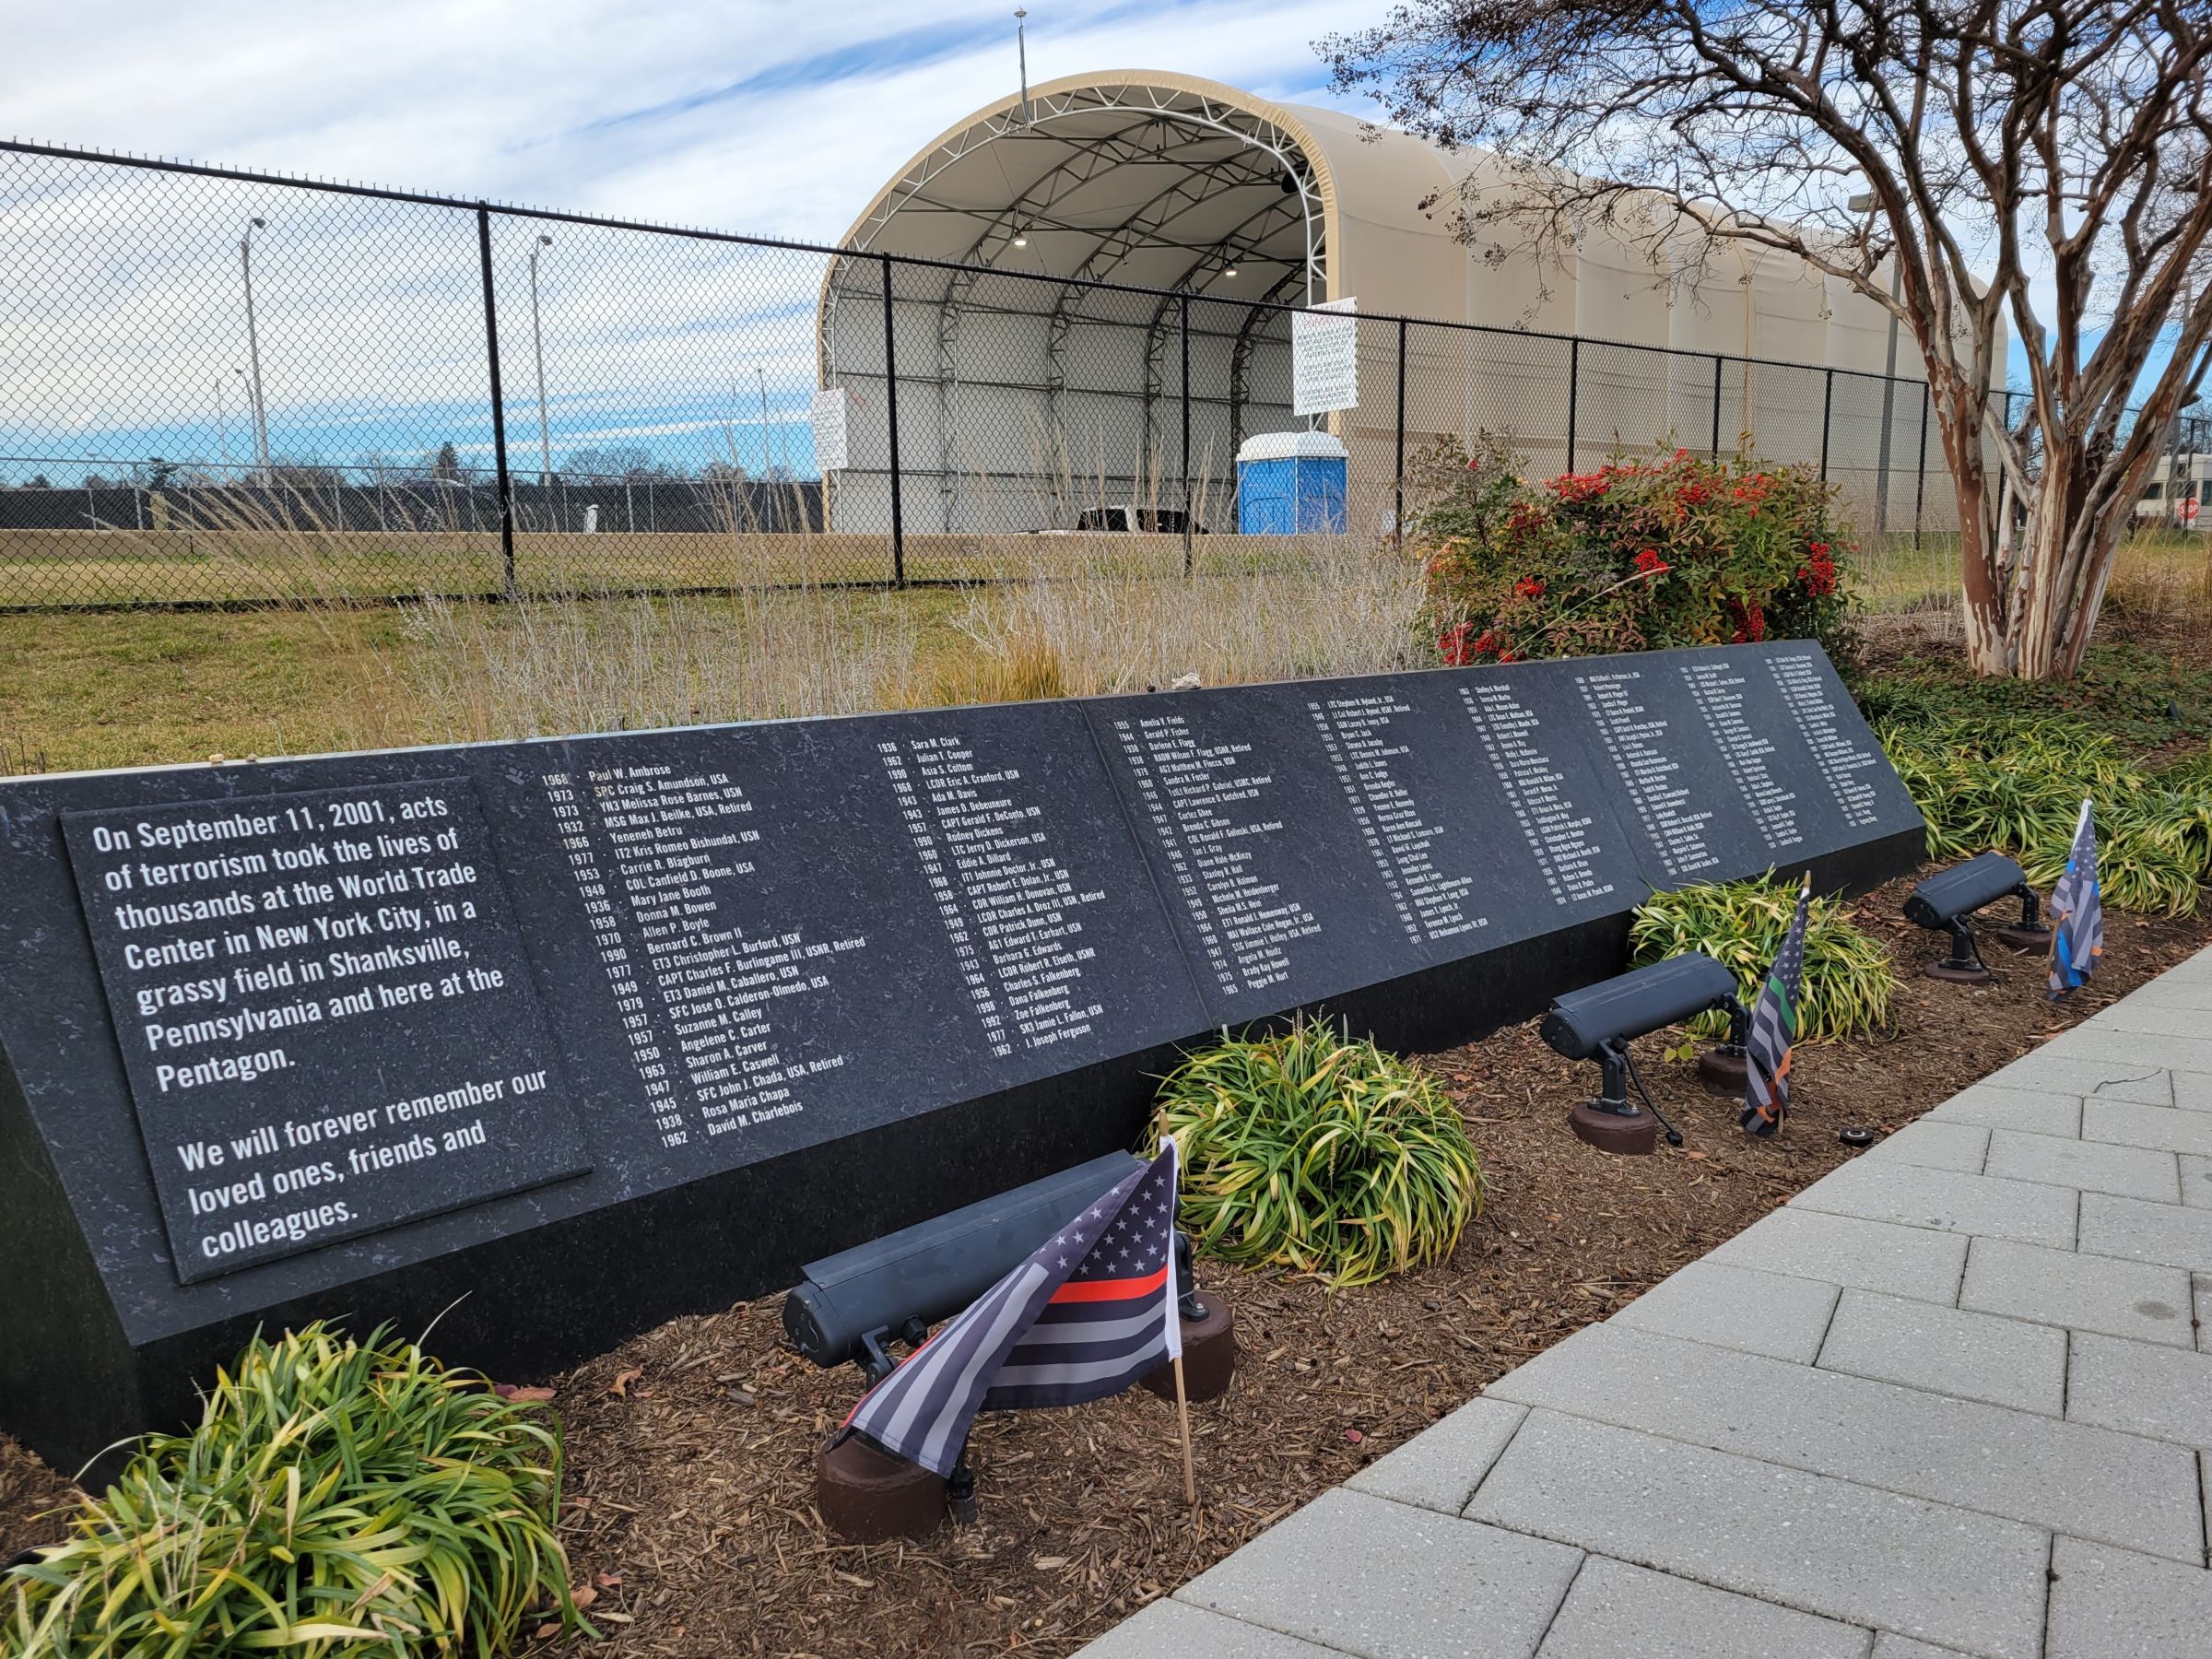 9·11 테러 희생자를 기리는 버지니아 알링턴의 펜타곤 메모리얼(Pentagon Memorial)과 미공군 기념물